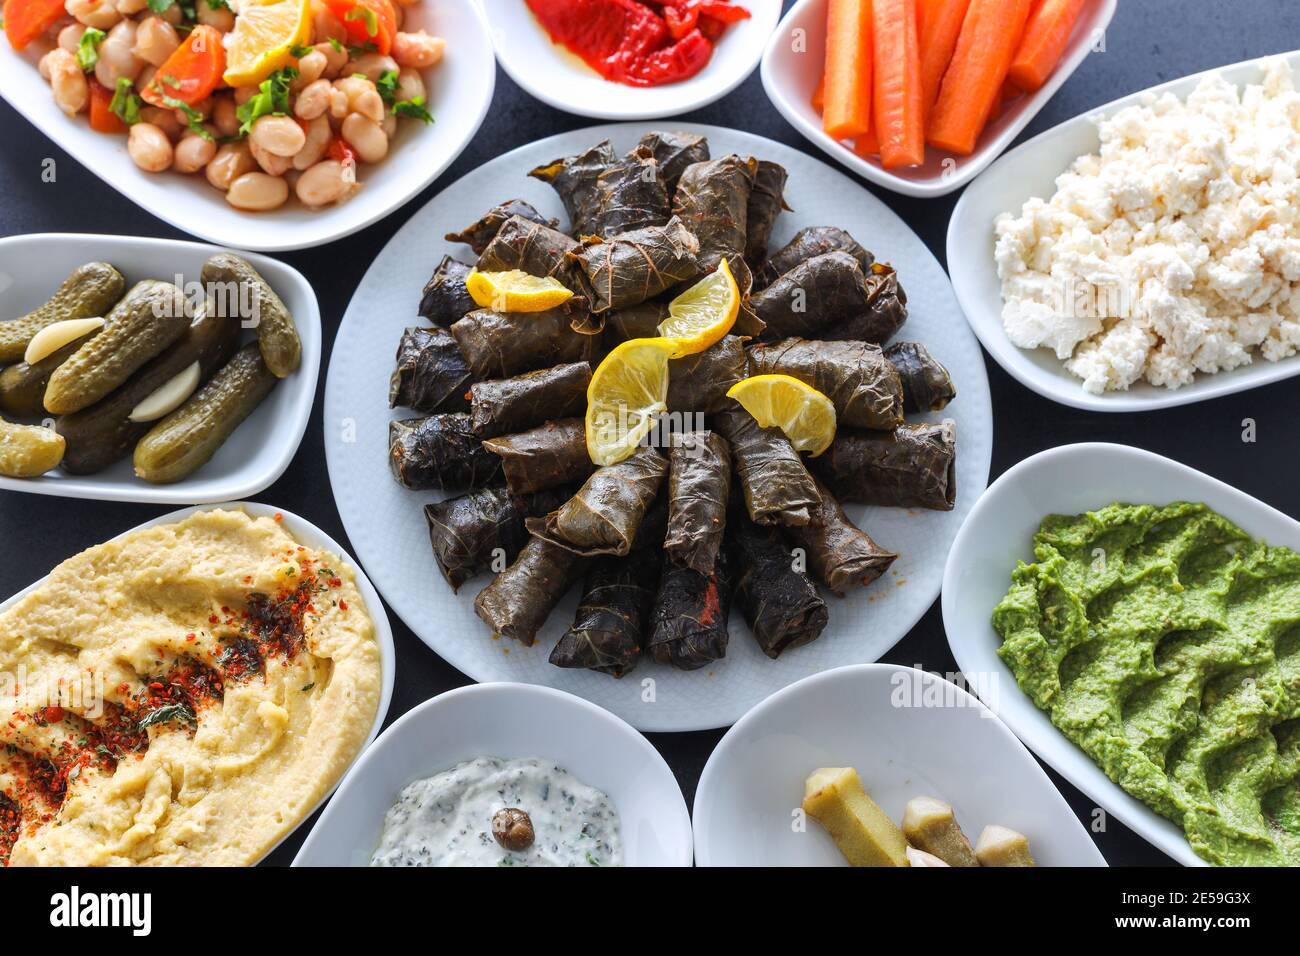 Table de meze traditionnelle turque et grecque avec feuilles de raisin farcies, olives, houmous colorés, hors-d'œuvre froids (avec huile d'olive) Banque D'Images